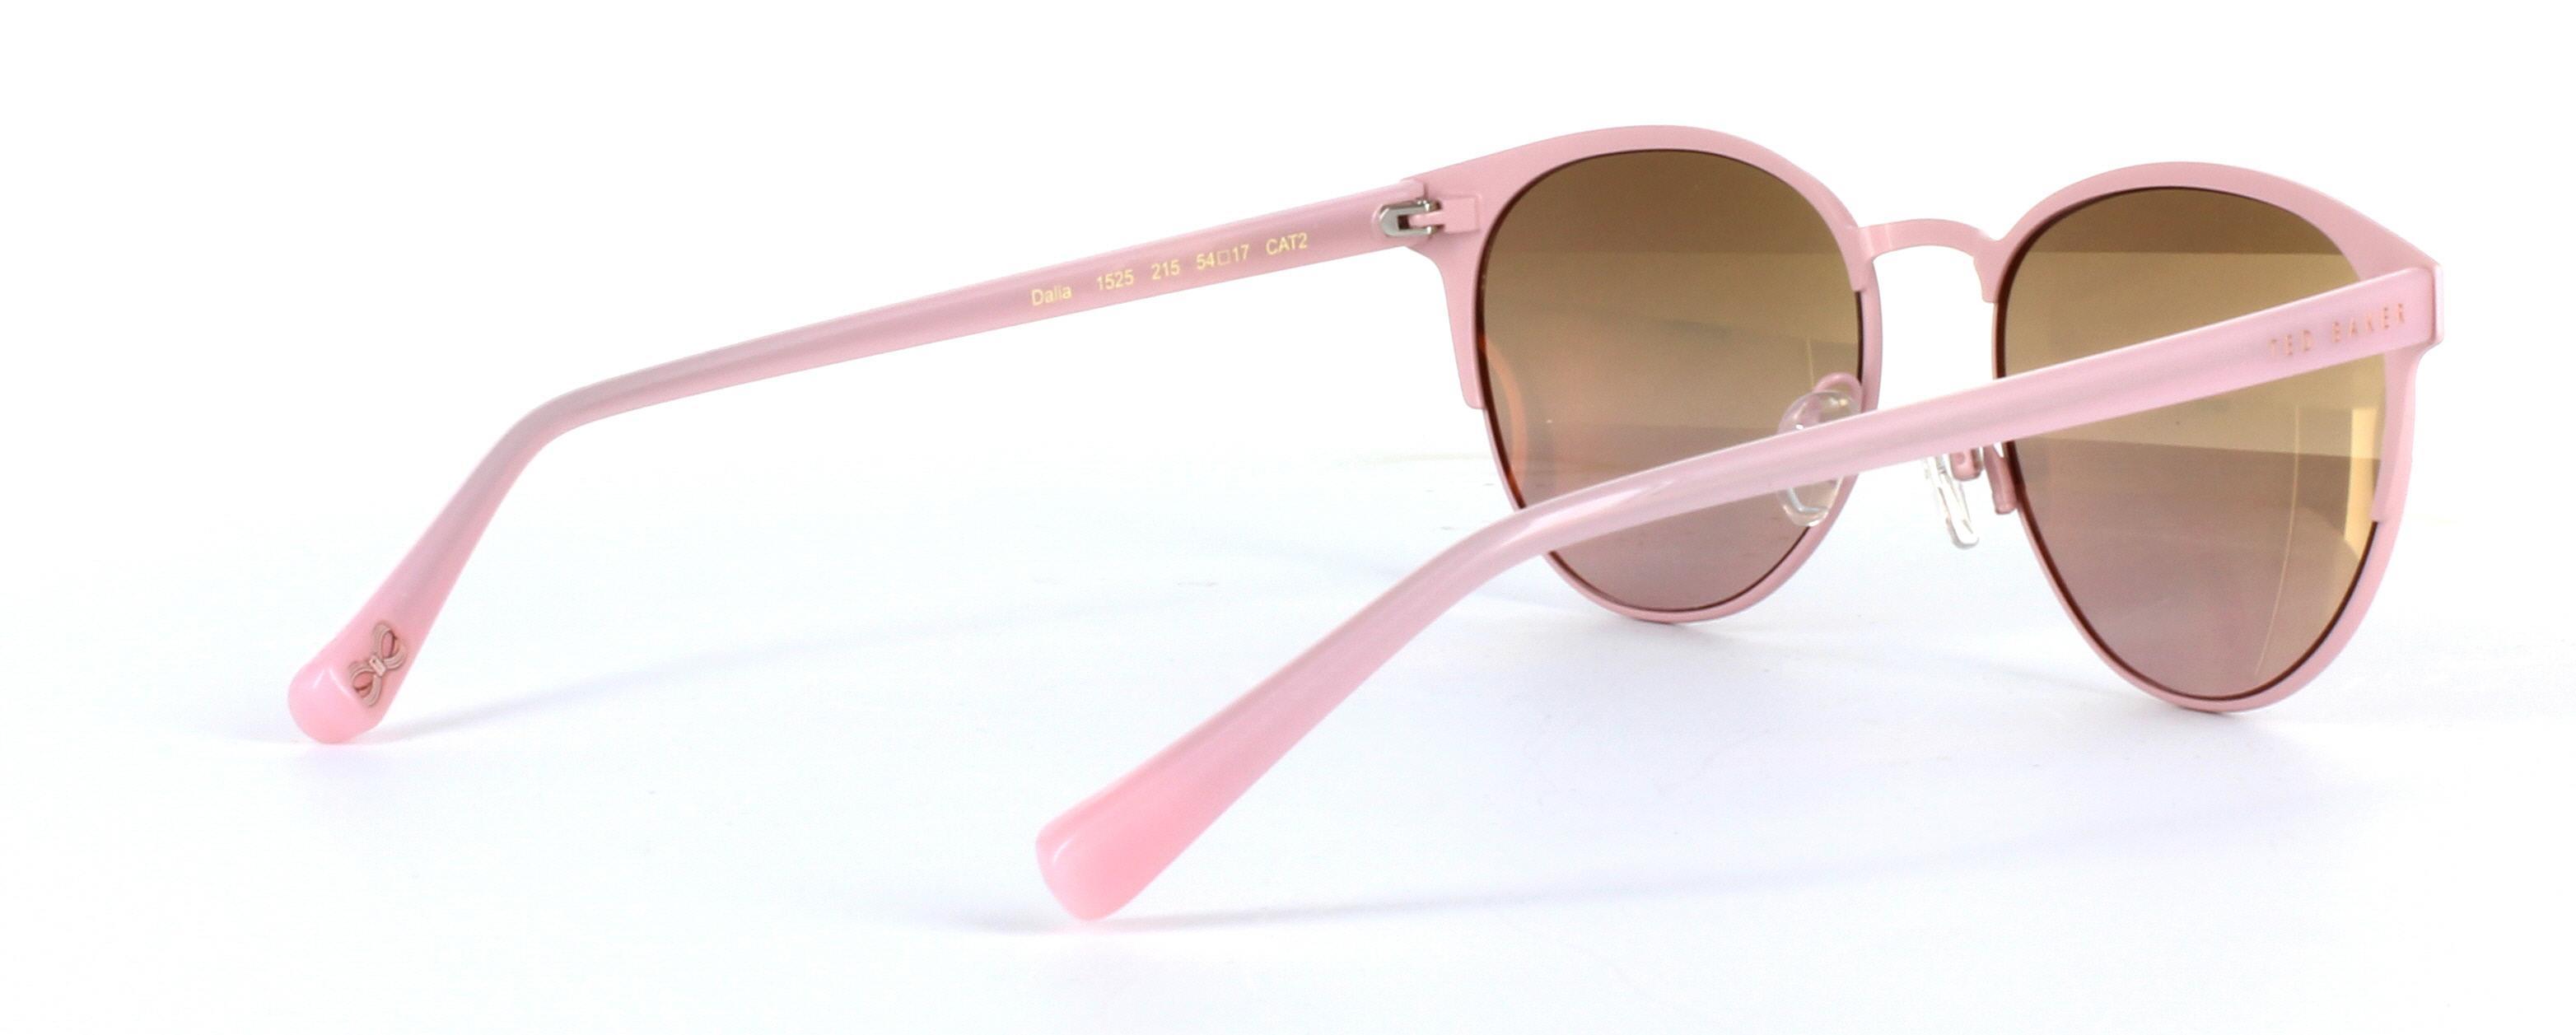 Daila Pink Full Rim Metal Sunglasses - Image View 4